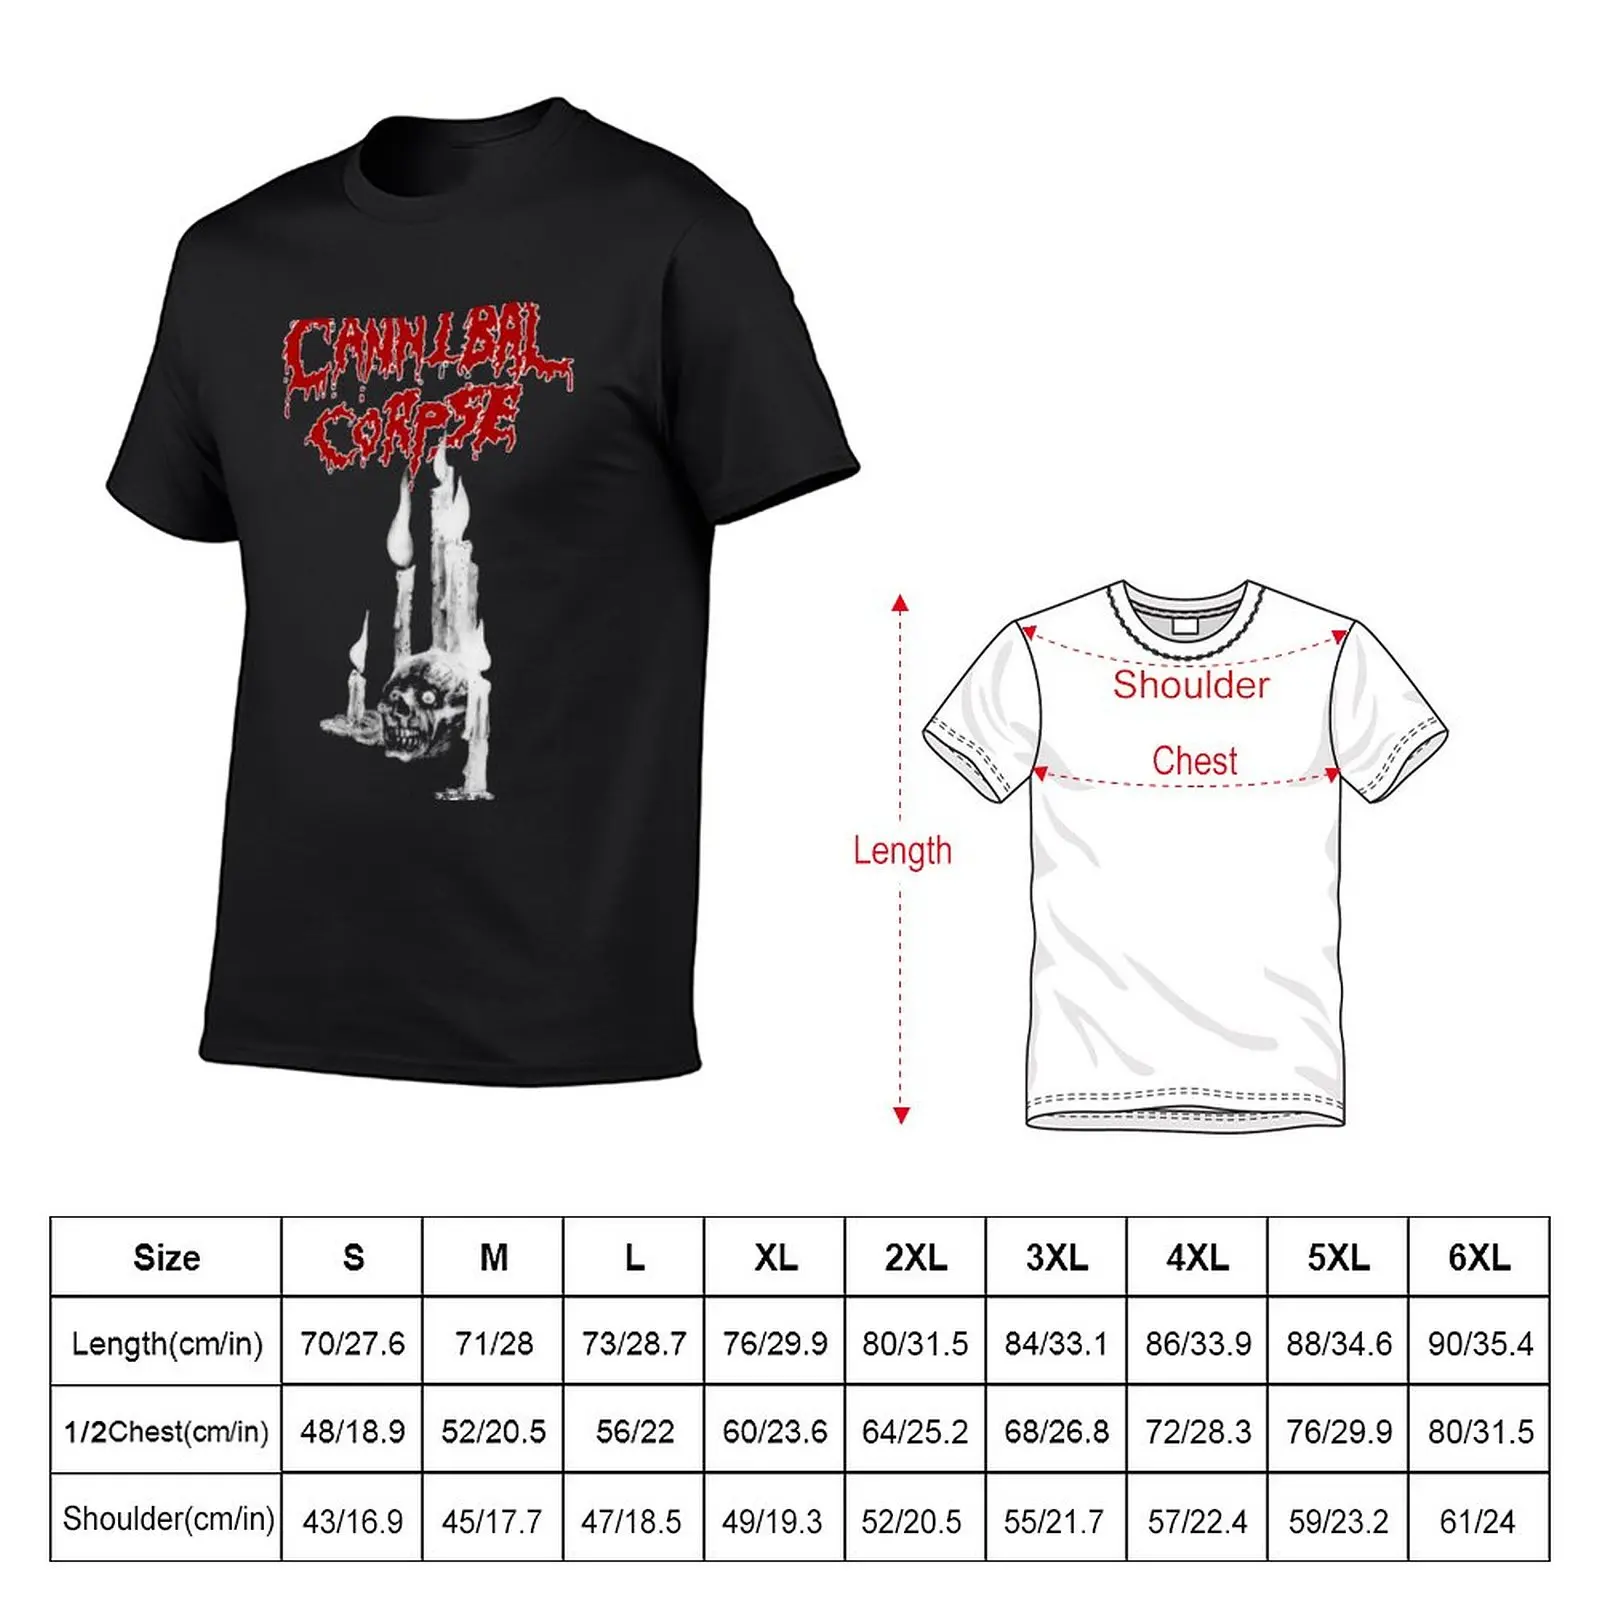 Новая футболка Cannibal Corpse, блузки, топы, футболки для спортивных фанатов, мужские футболки с рисунком аниме Изображение 1